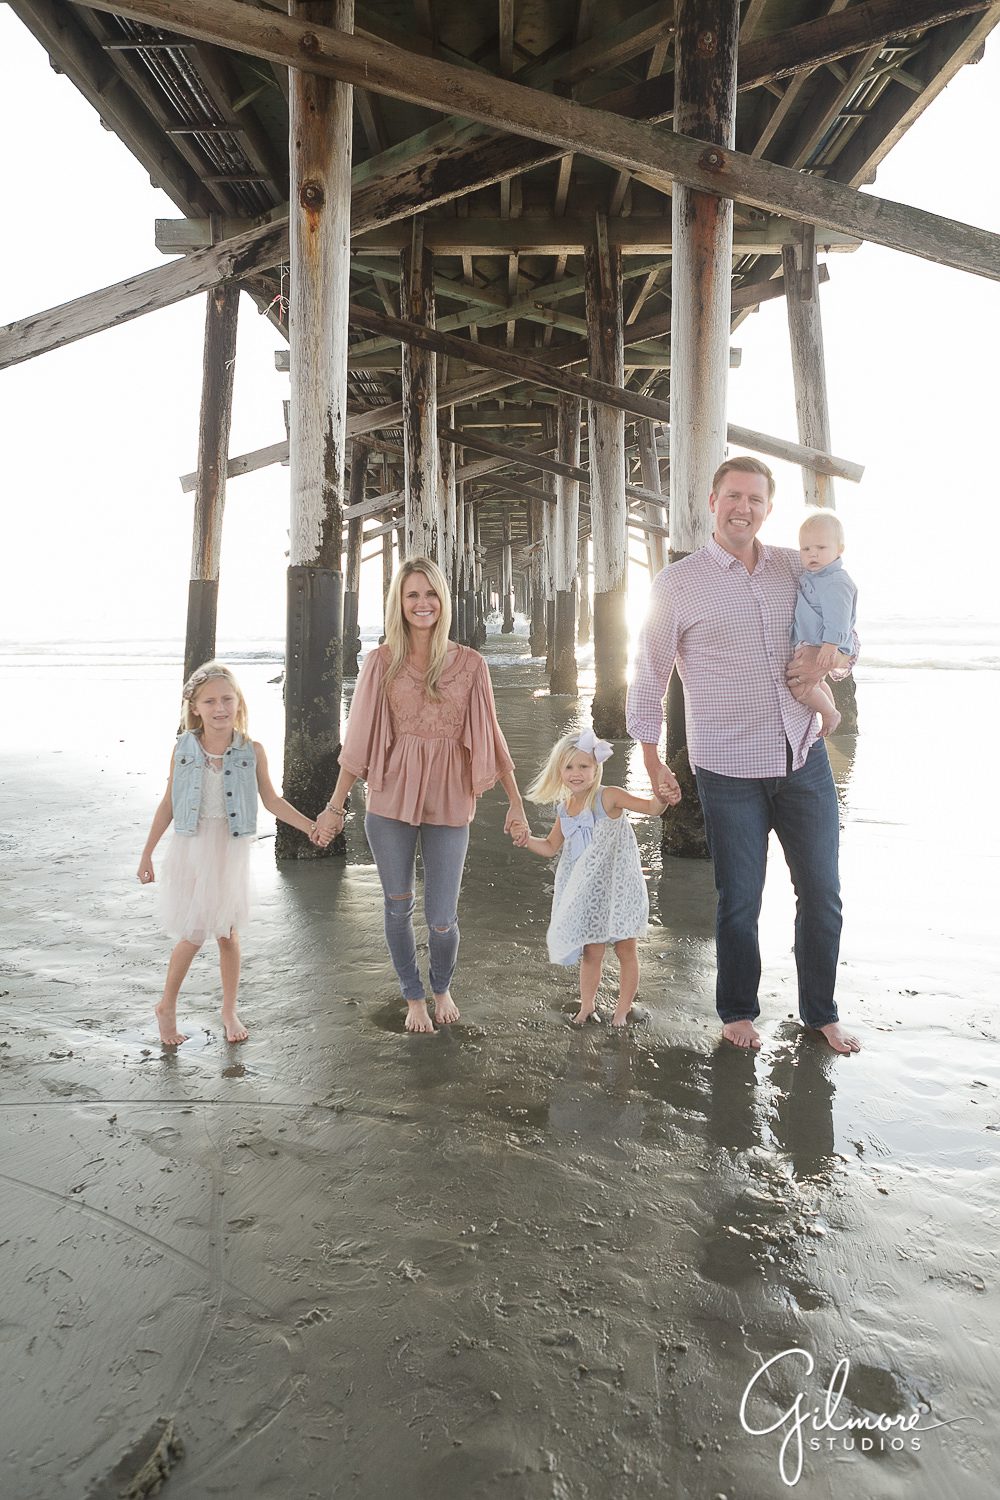 Pier, beach house, families, Newport Beach Family Vacation, children's photographer, Newport Beach Pier